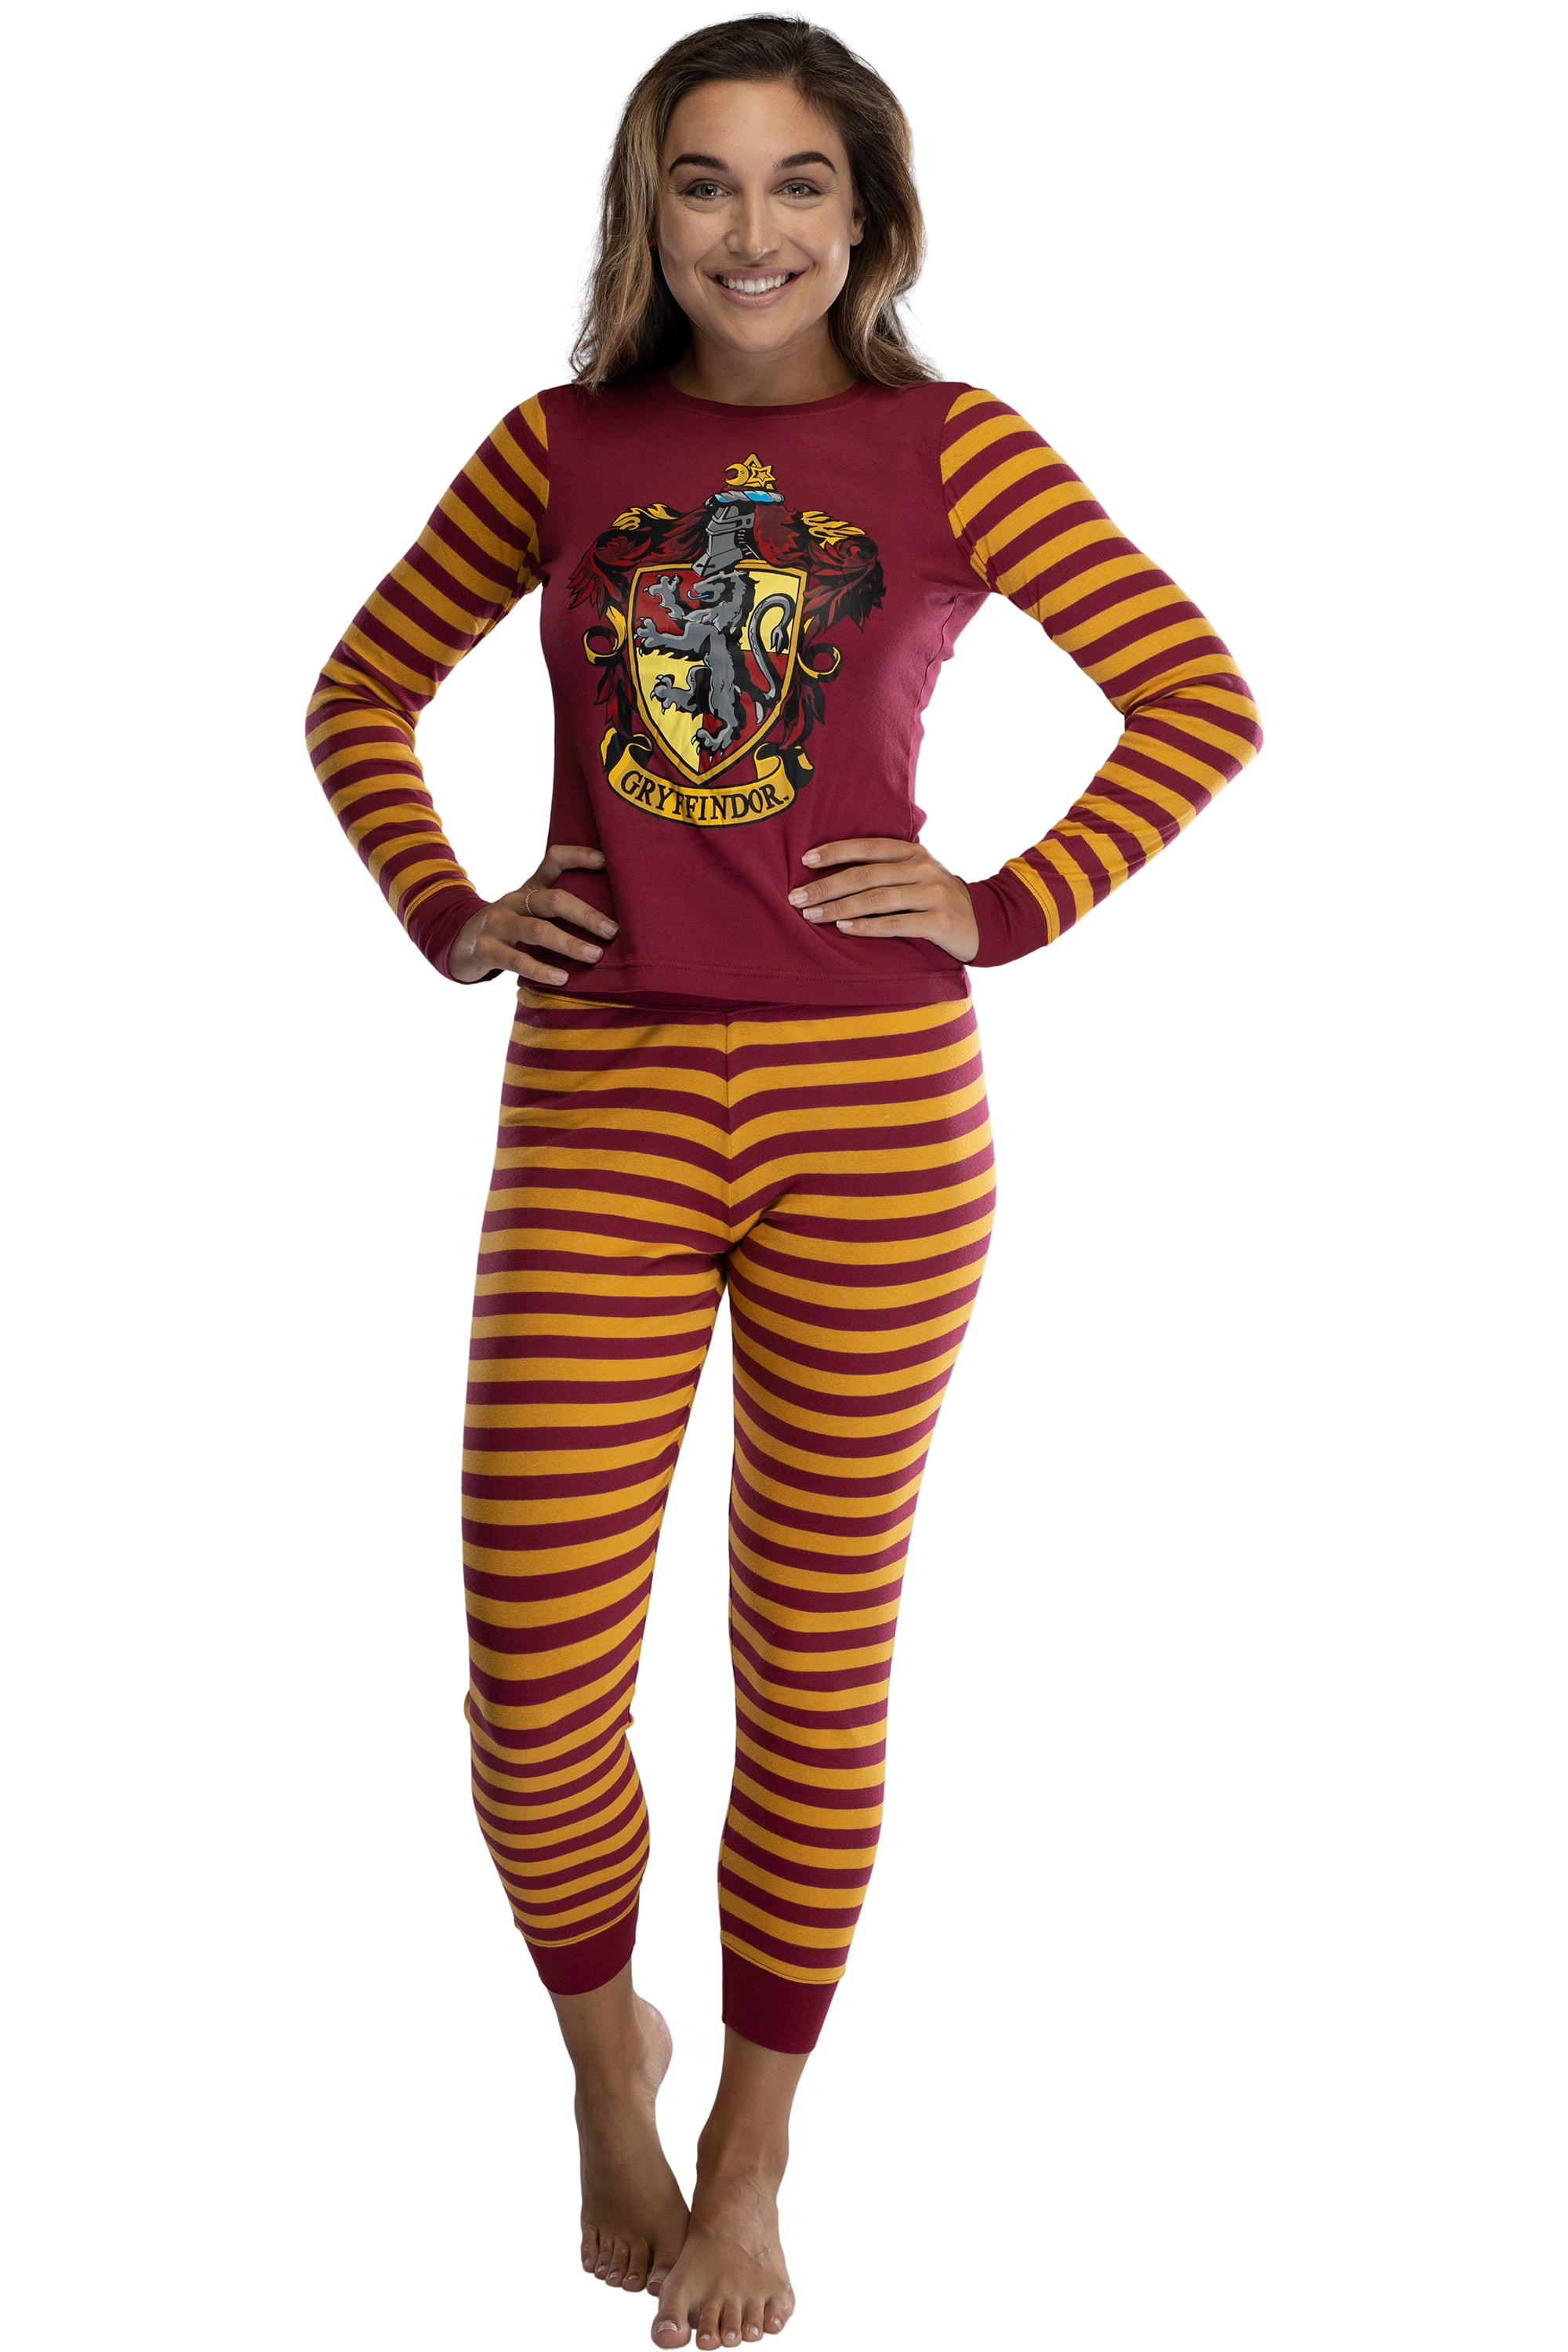 Harry Potter Baby Hogwarts Houses Crest Logo Cotton Infant Pajama Gift Set